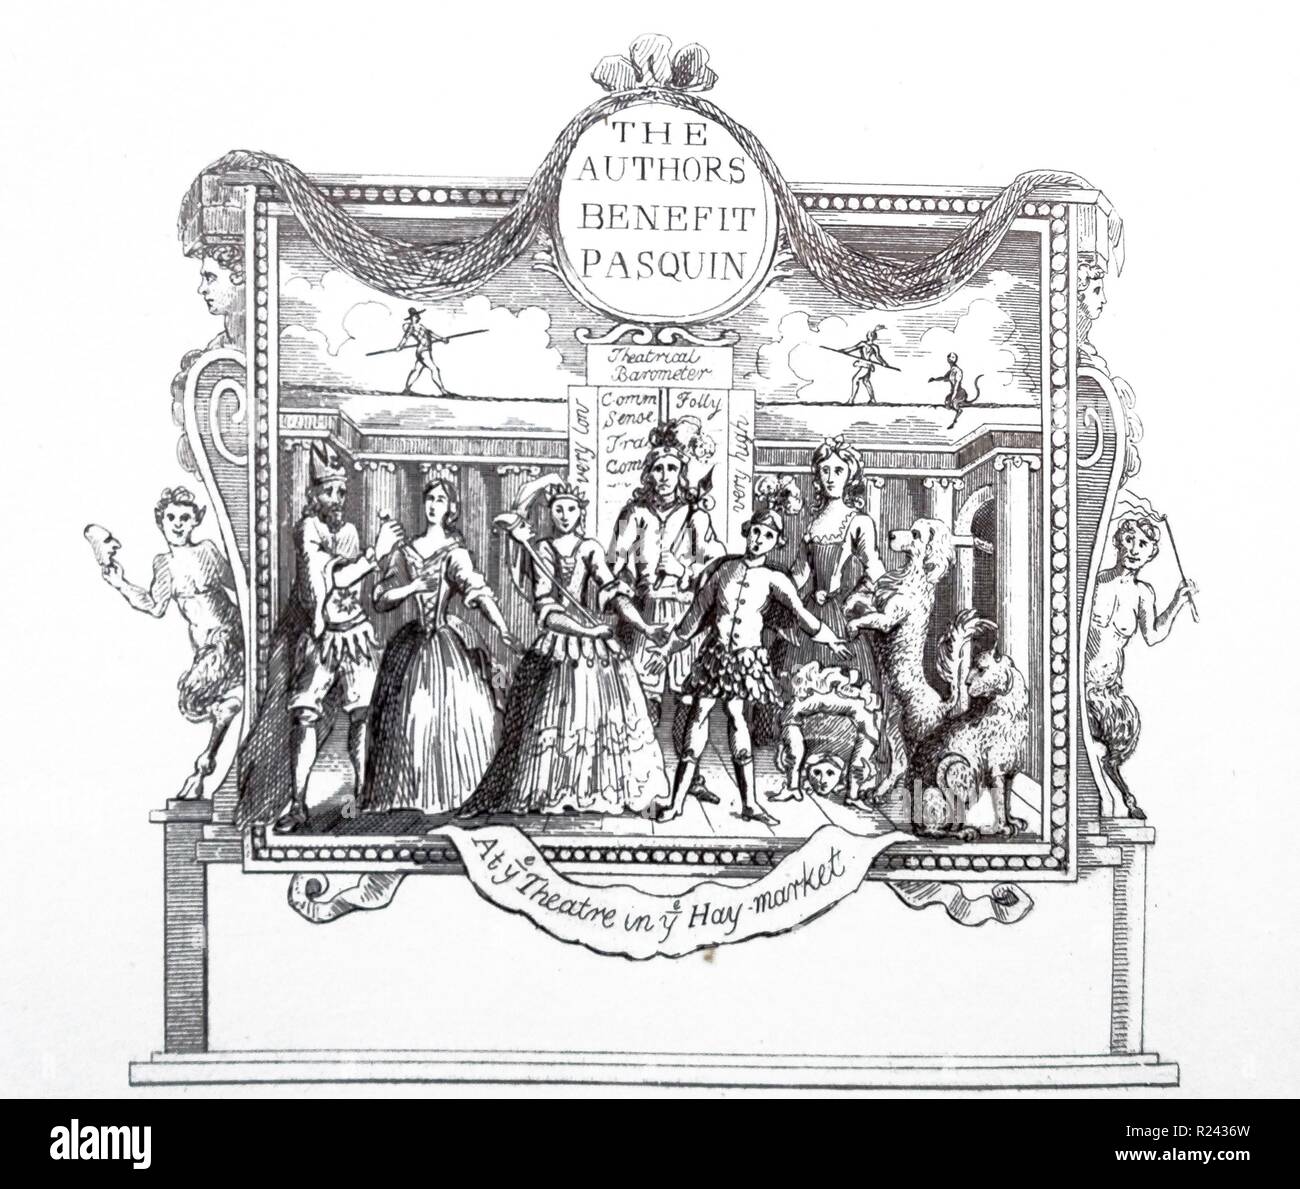 Kupferstich von britischen Künstler & Stecher, William Hogarth 1697-1764: Ticket für das Theater aus dem 18. Jahrhundert Stockfoto